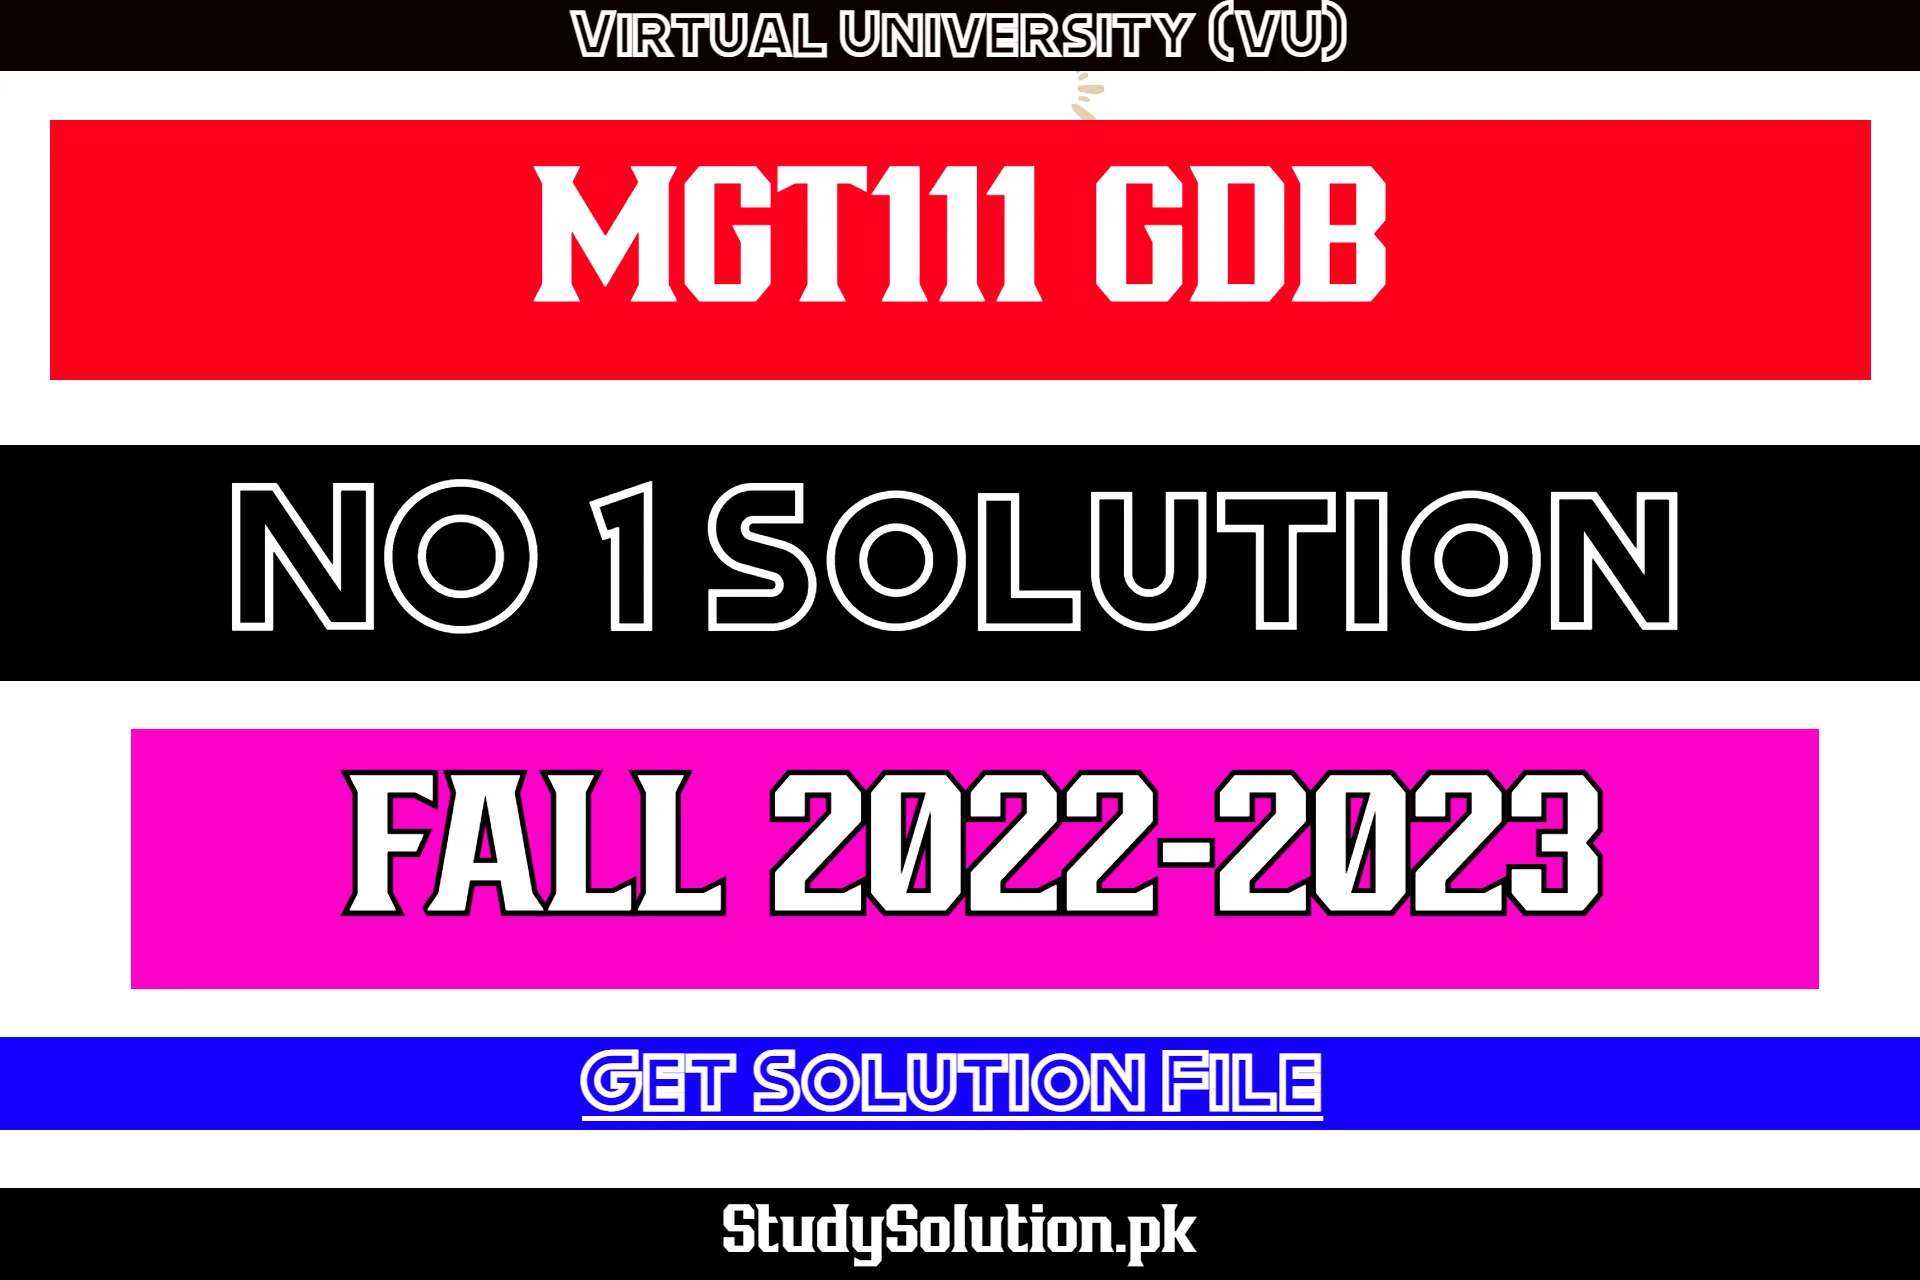 MGT111 GDB No 1 Solution Fall 2022